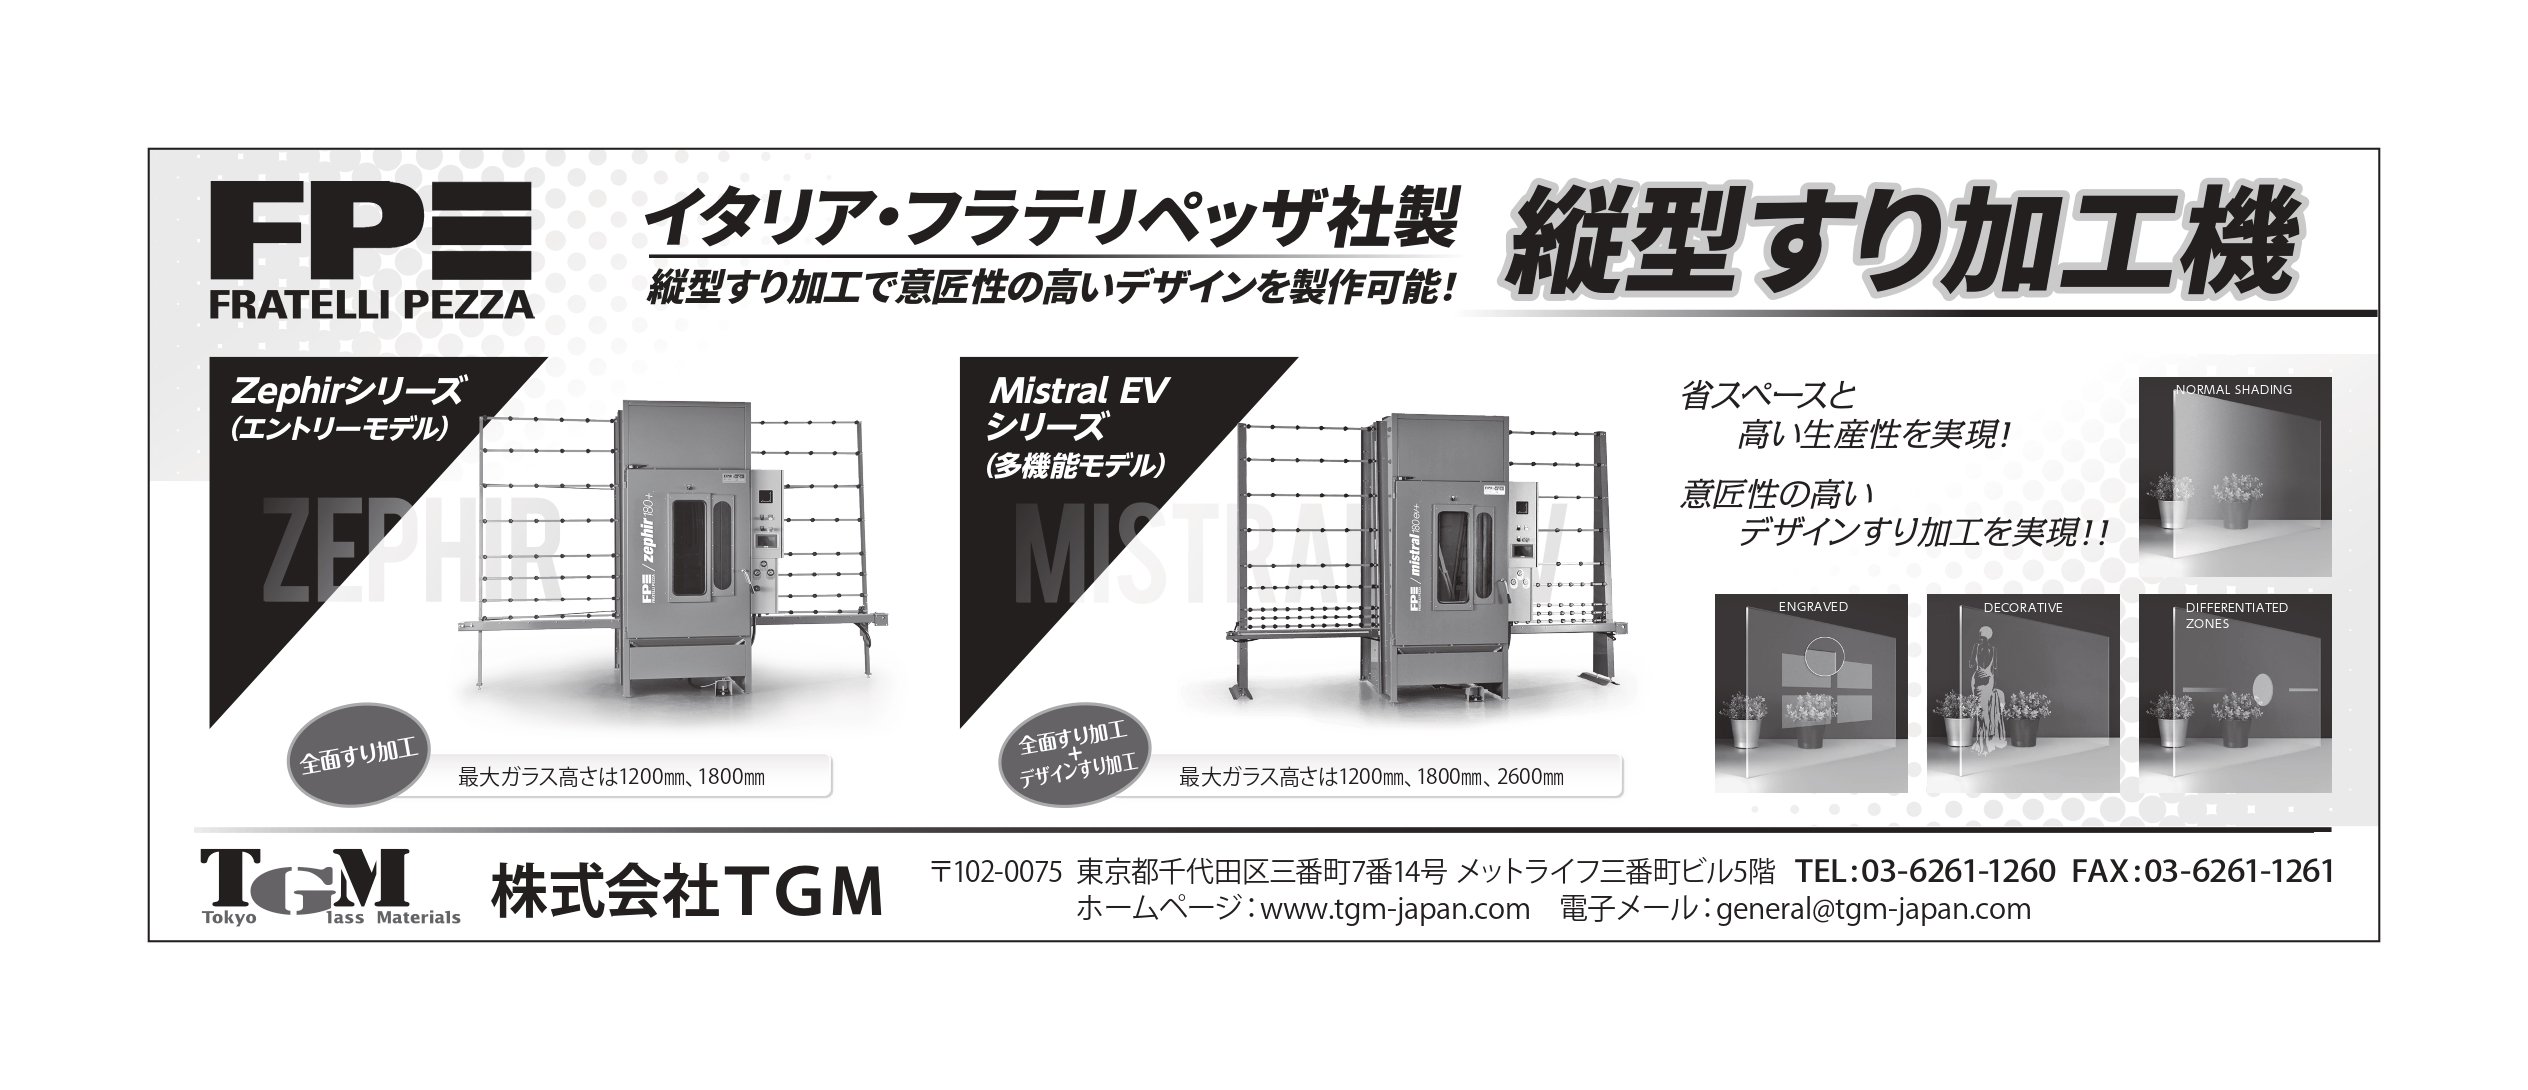 22.05.25 TGM様_広告図案_page-0001.jpg